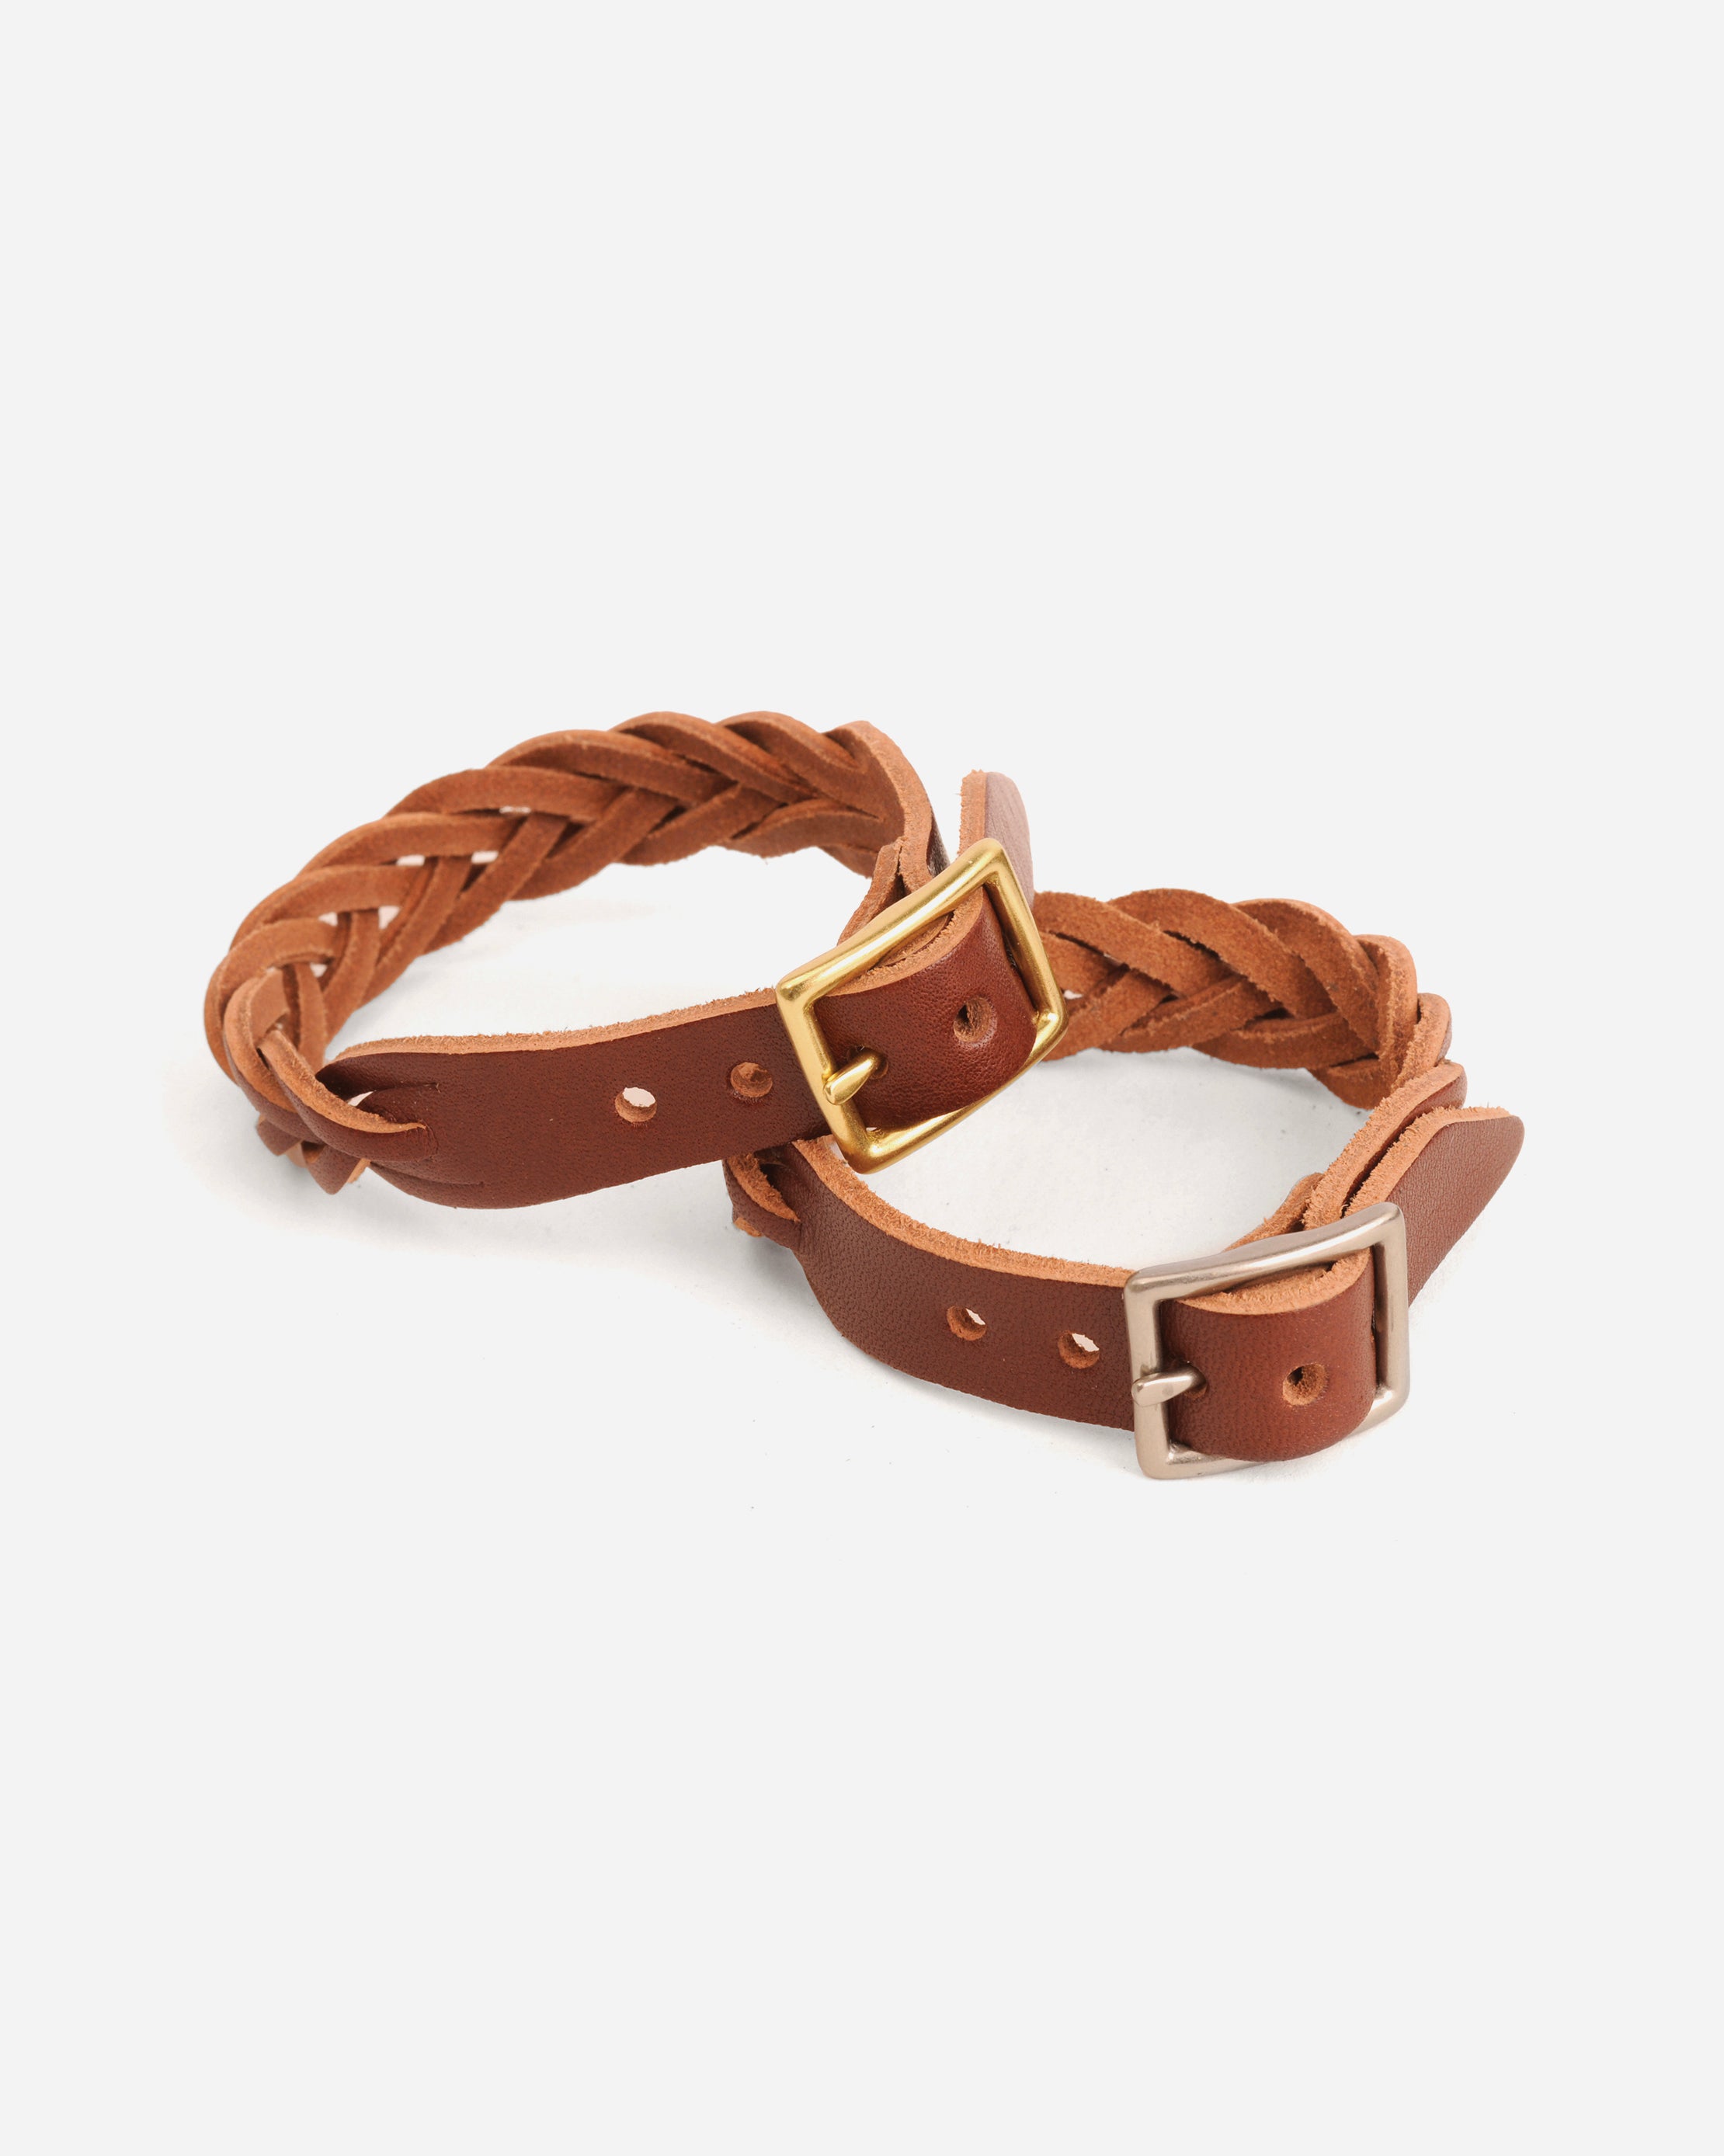 Braided Leather Bracelet - Mahogany